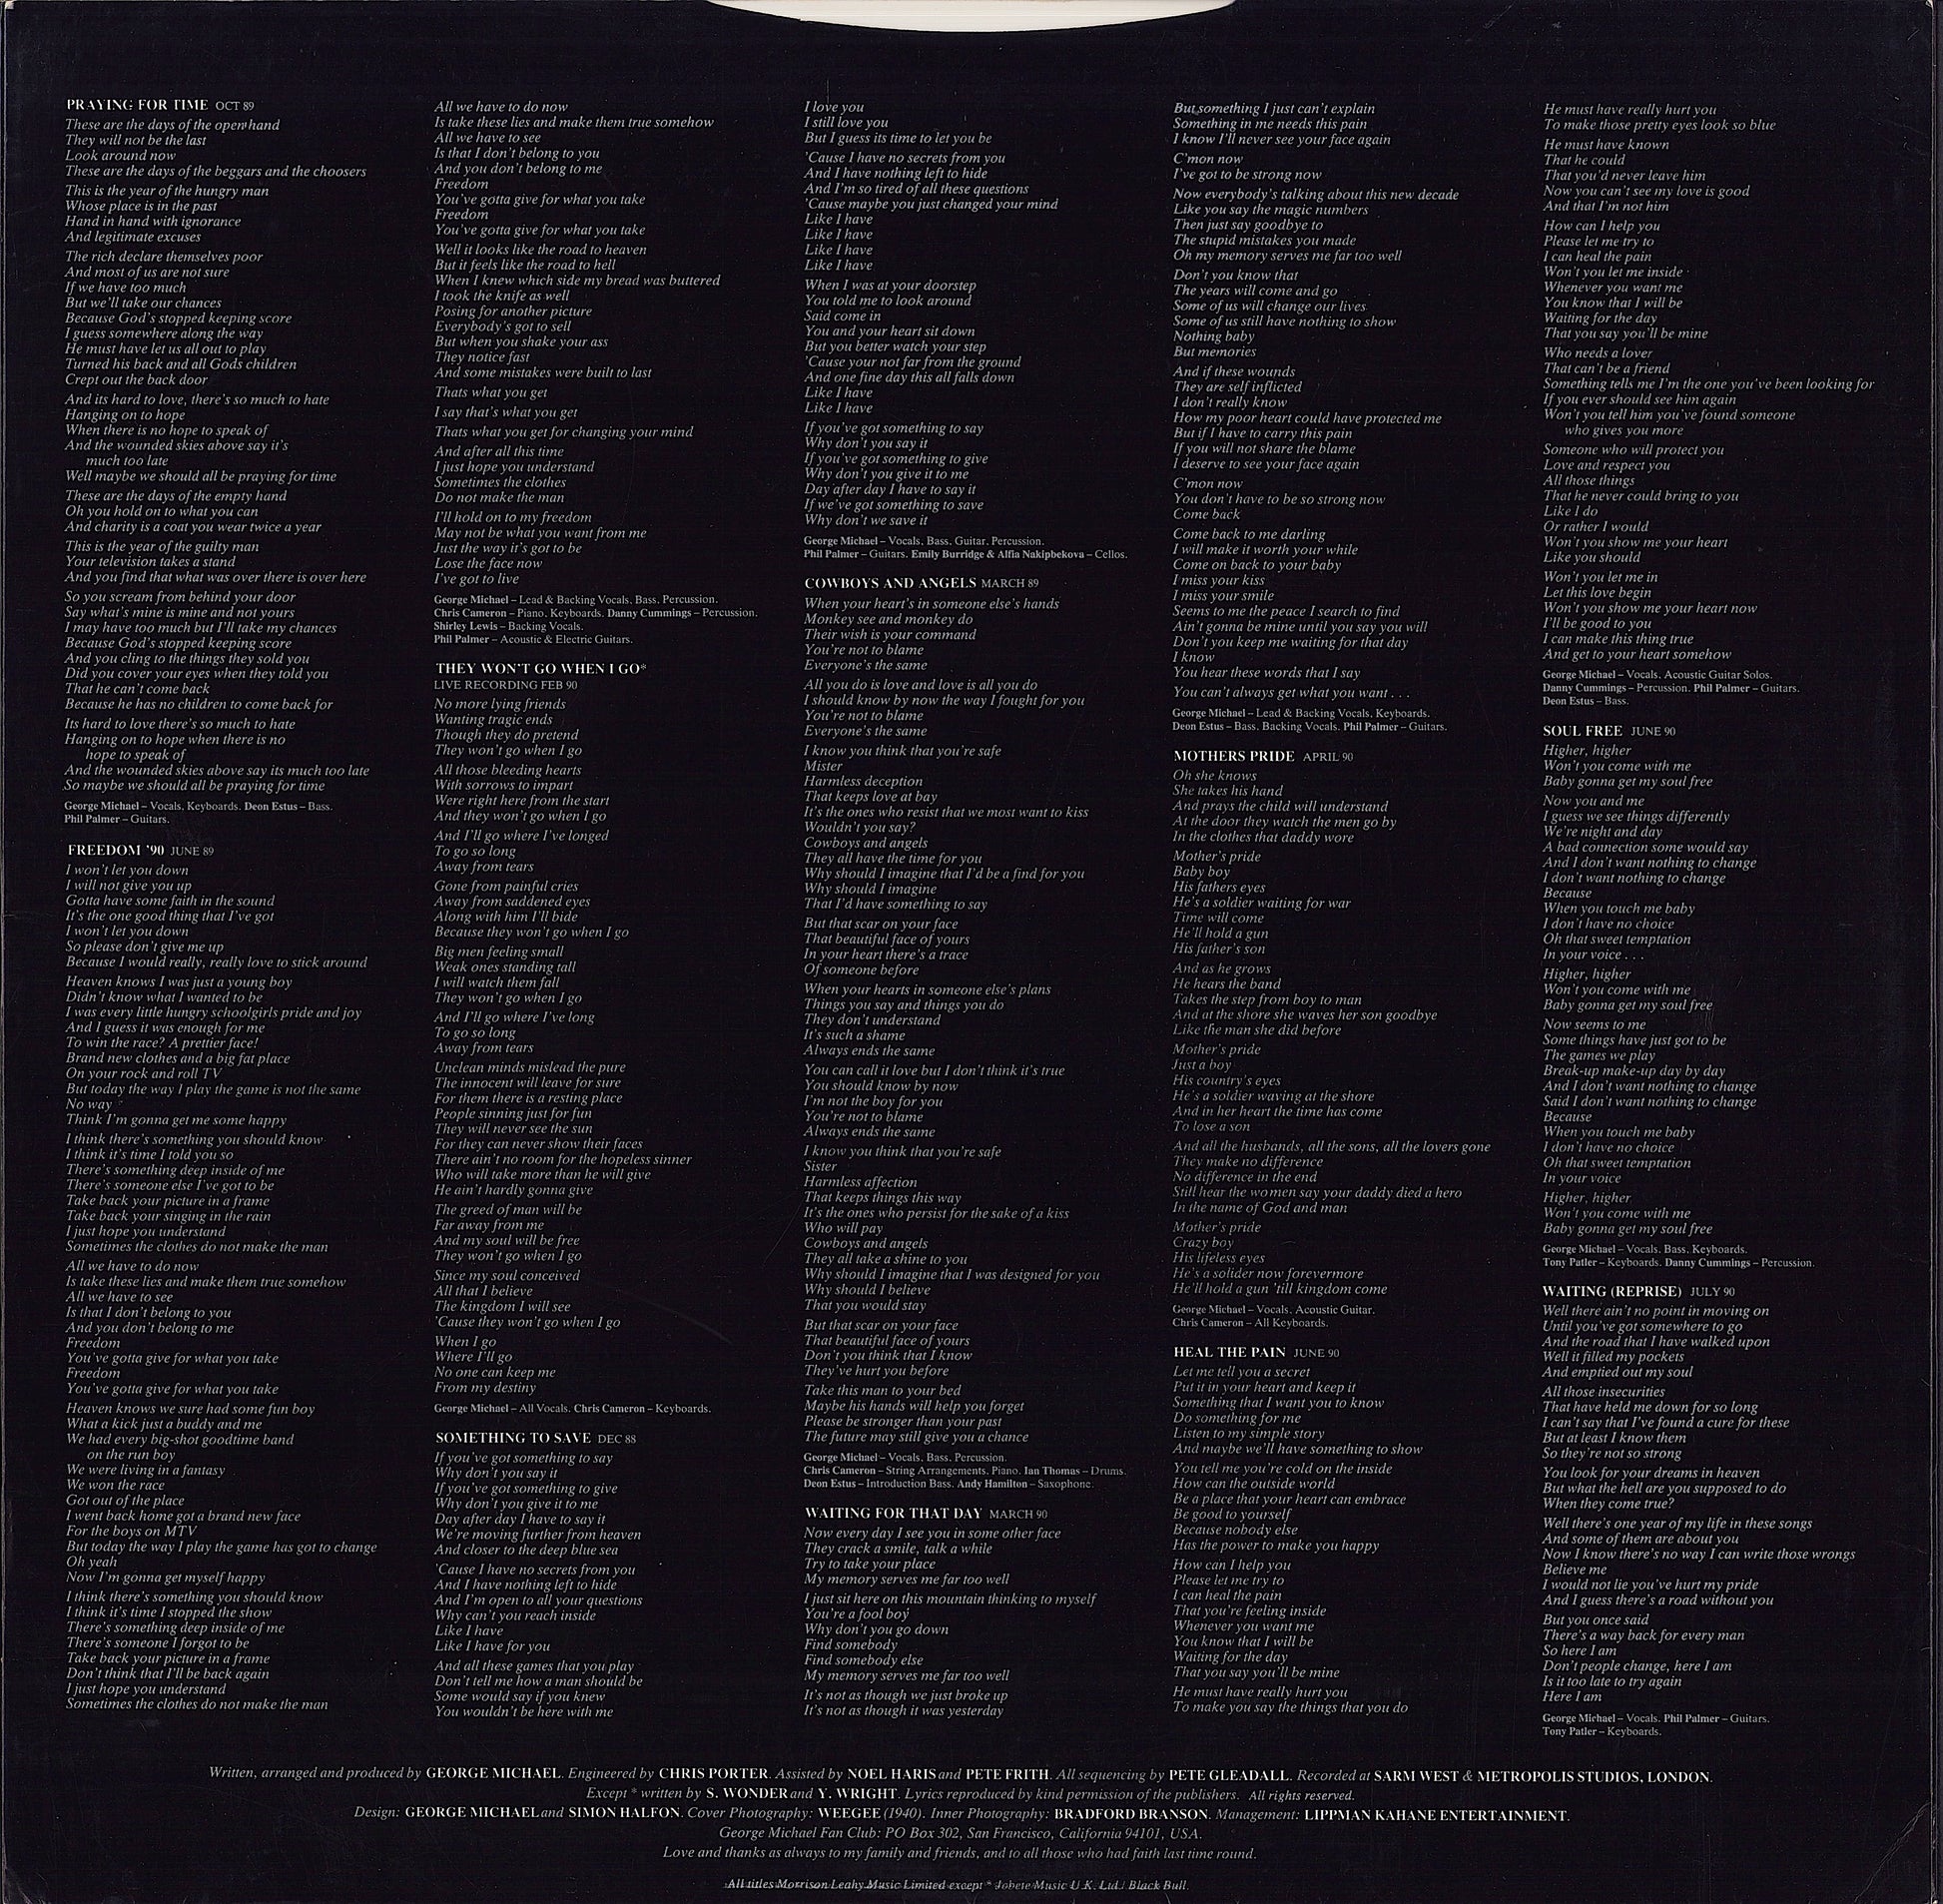 George Michael ‎- Listen Without Prejudice Vol. 1 Vinyl LP